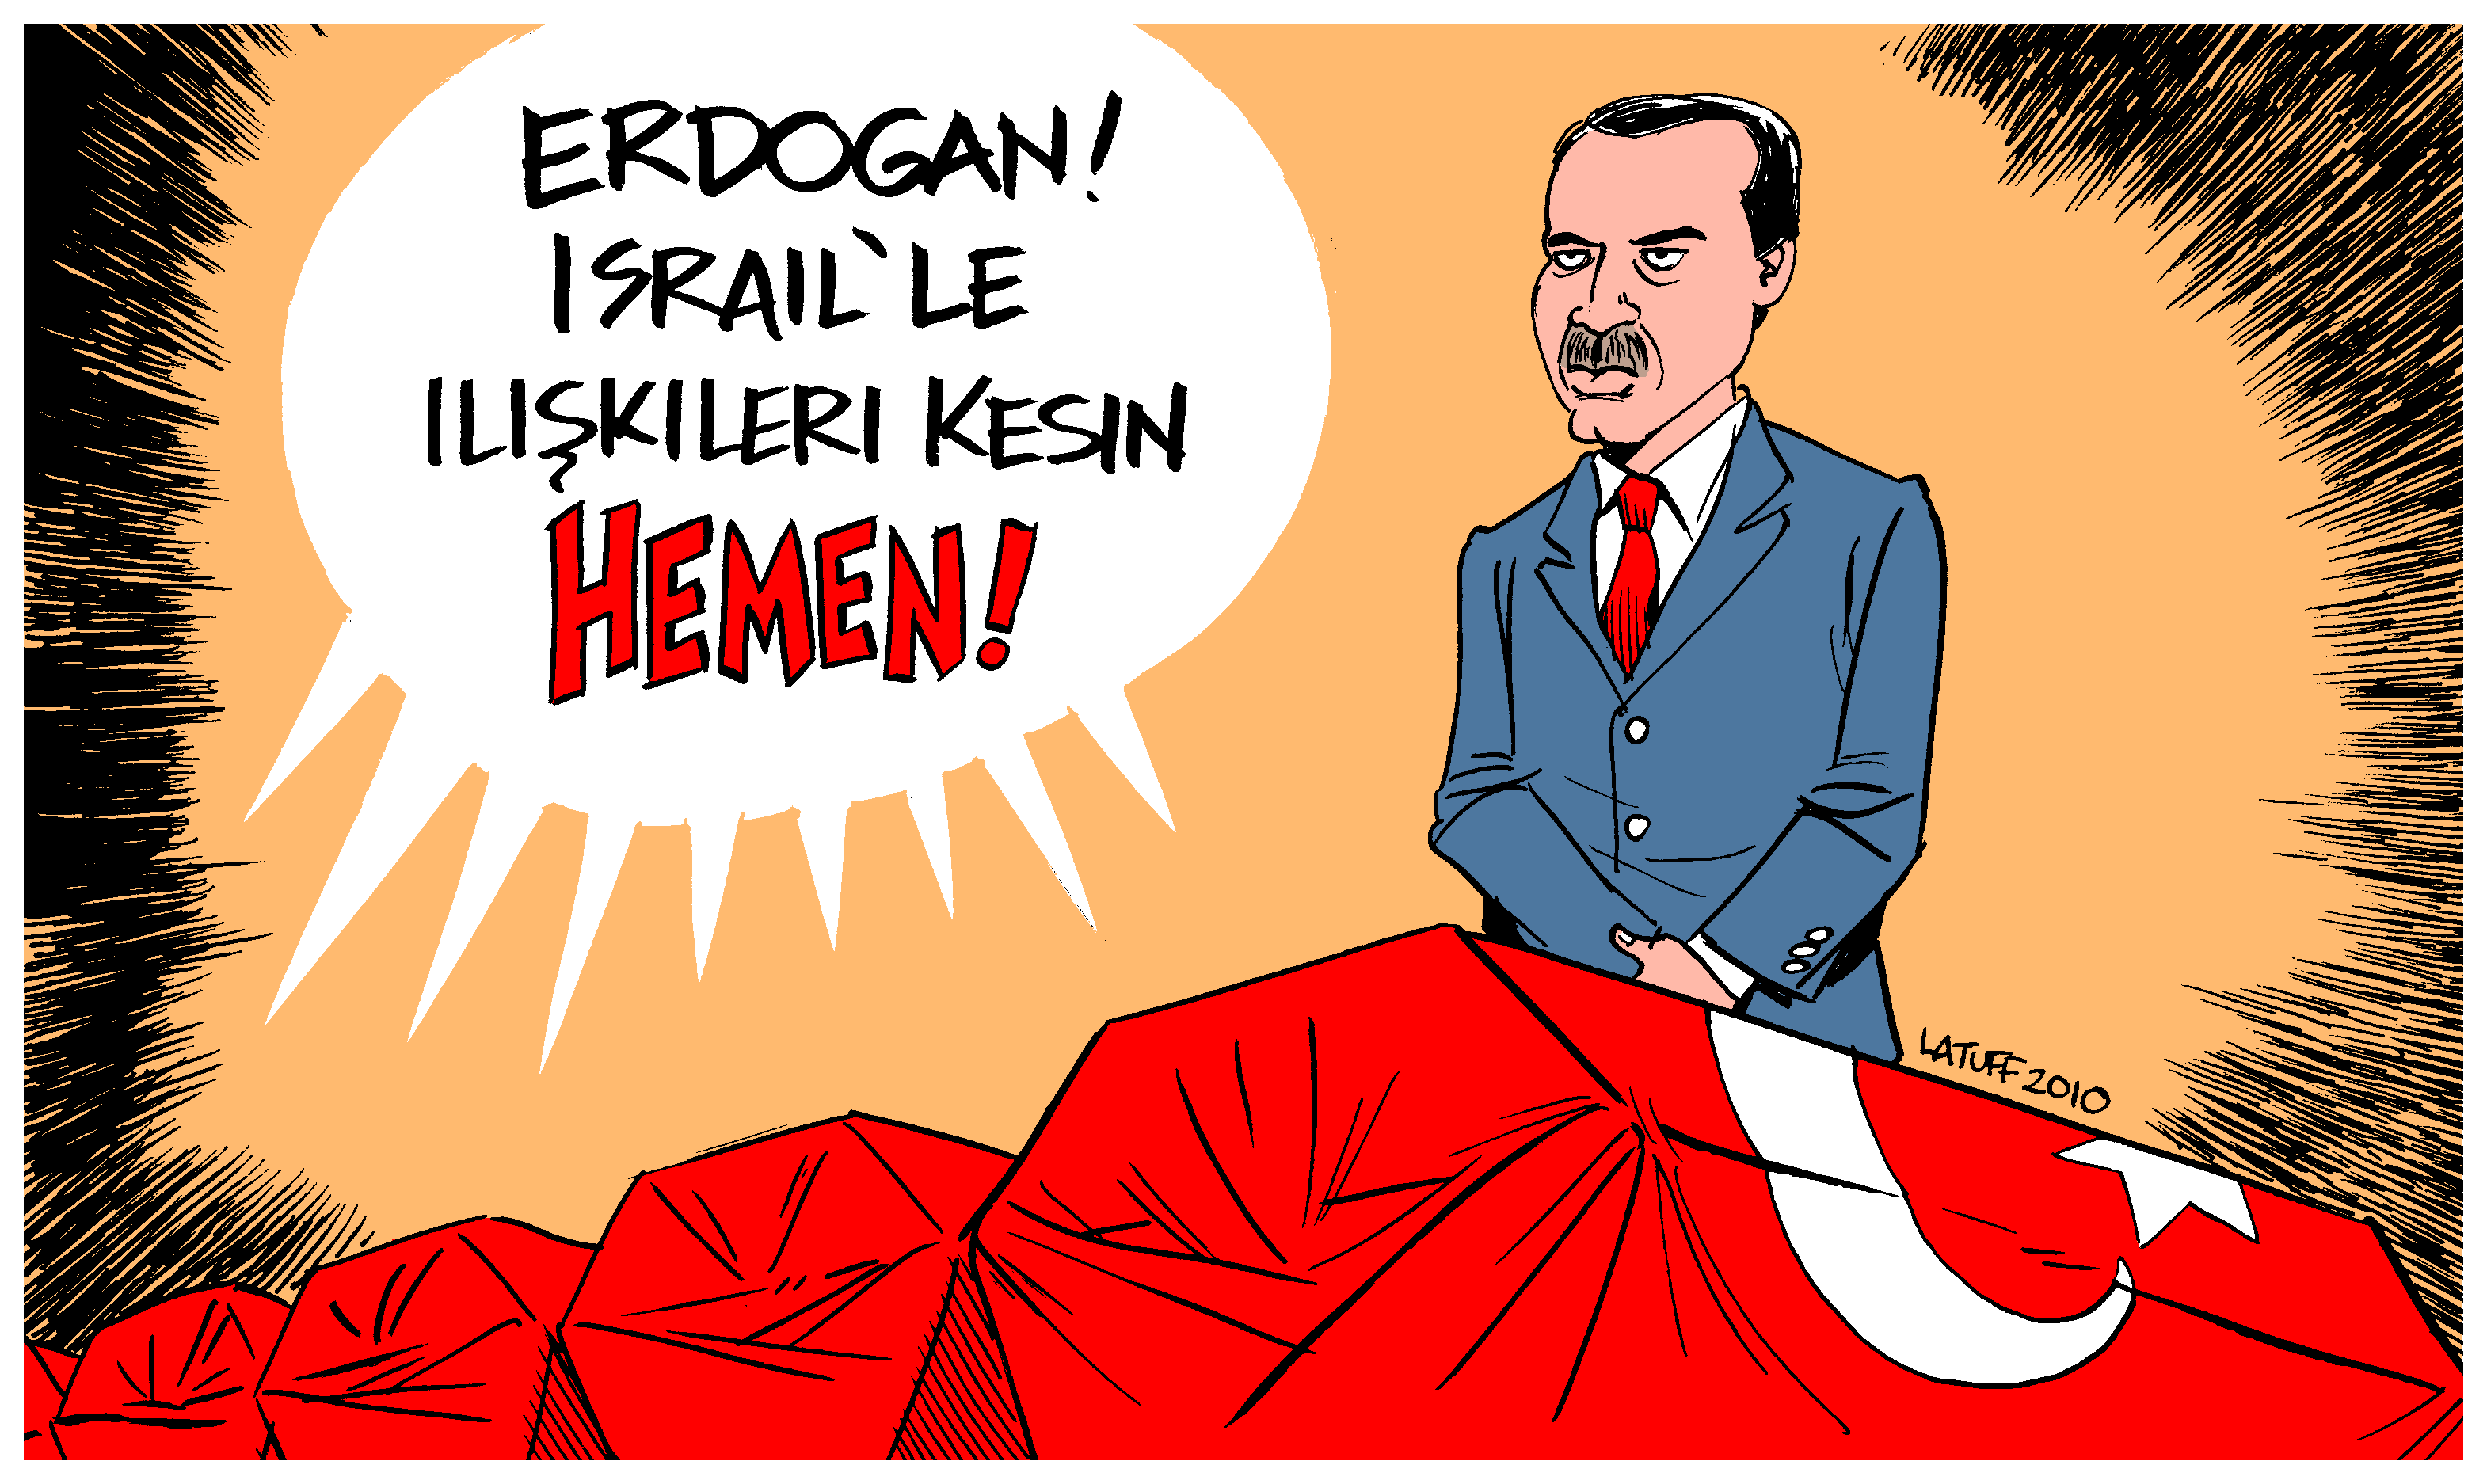 Erdoğan, İsrail'le ilişkileri kesin HEMEN!